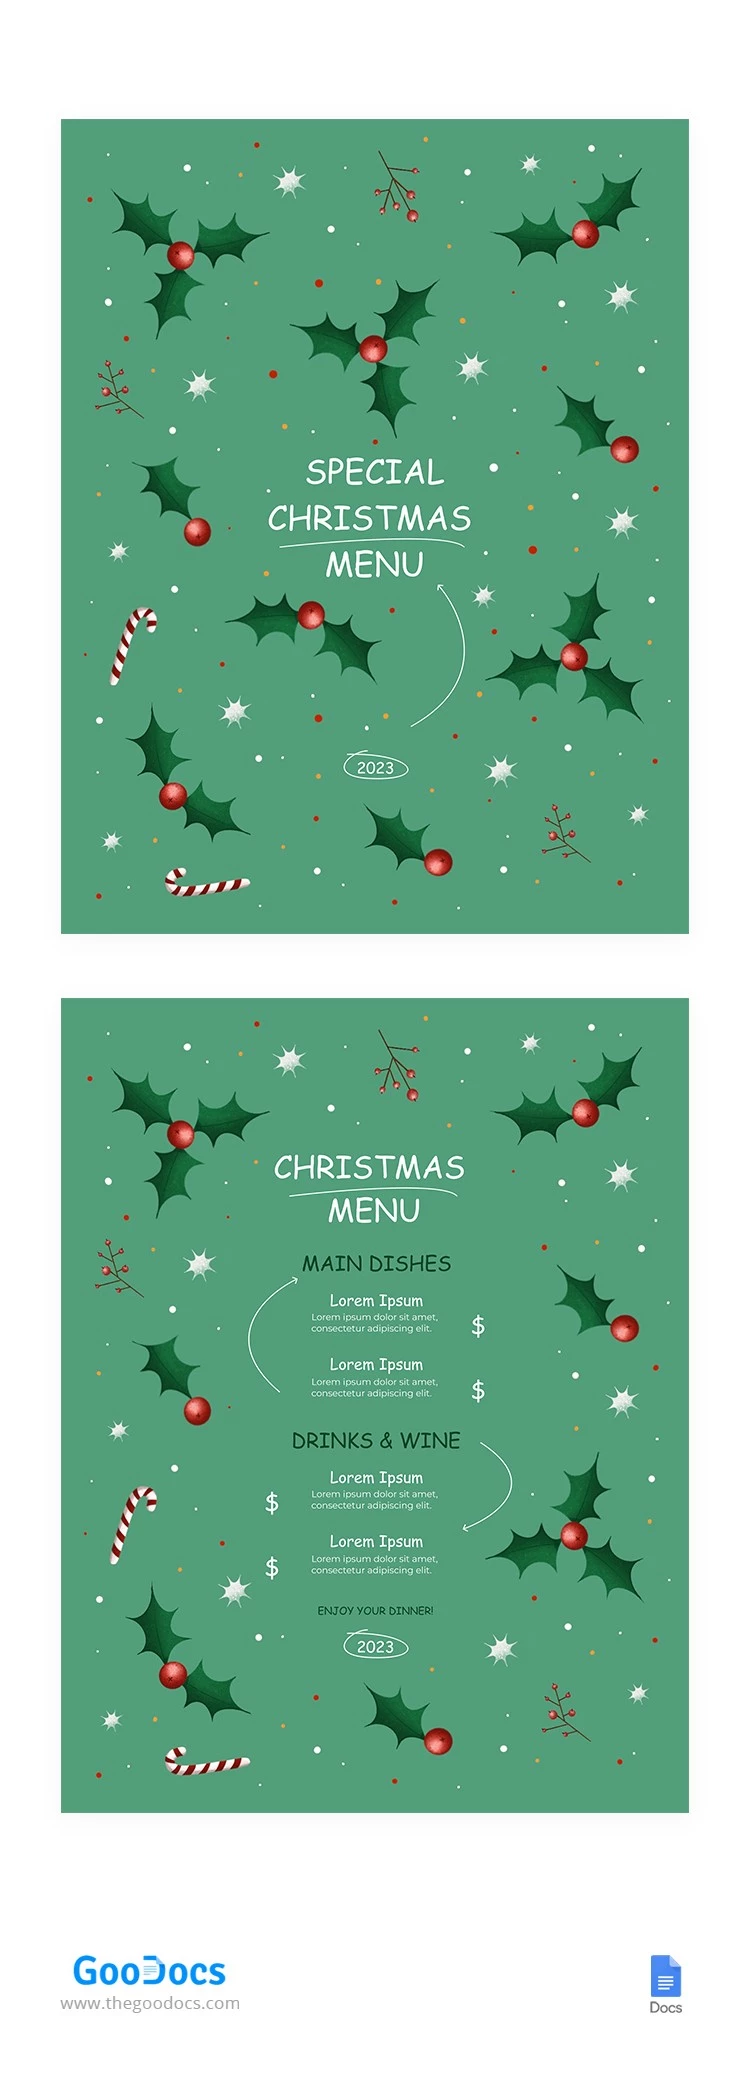 Illustrierte Weihnachtskarte - free Google Docs Template - 10065002